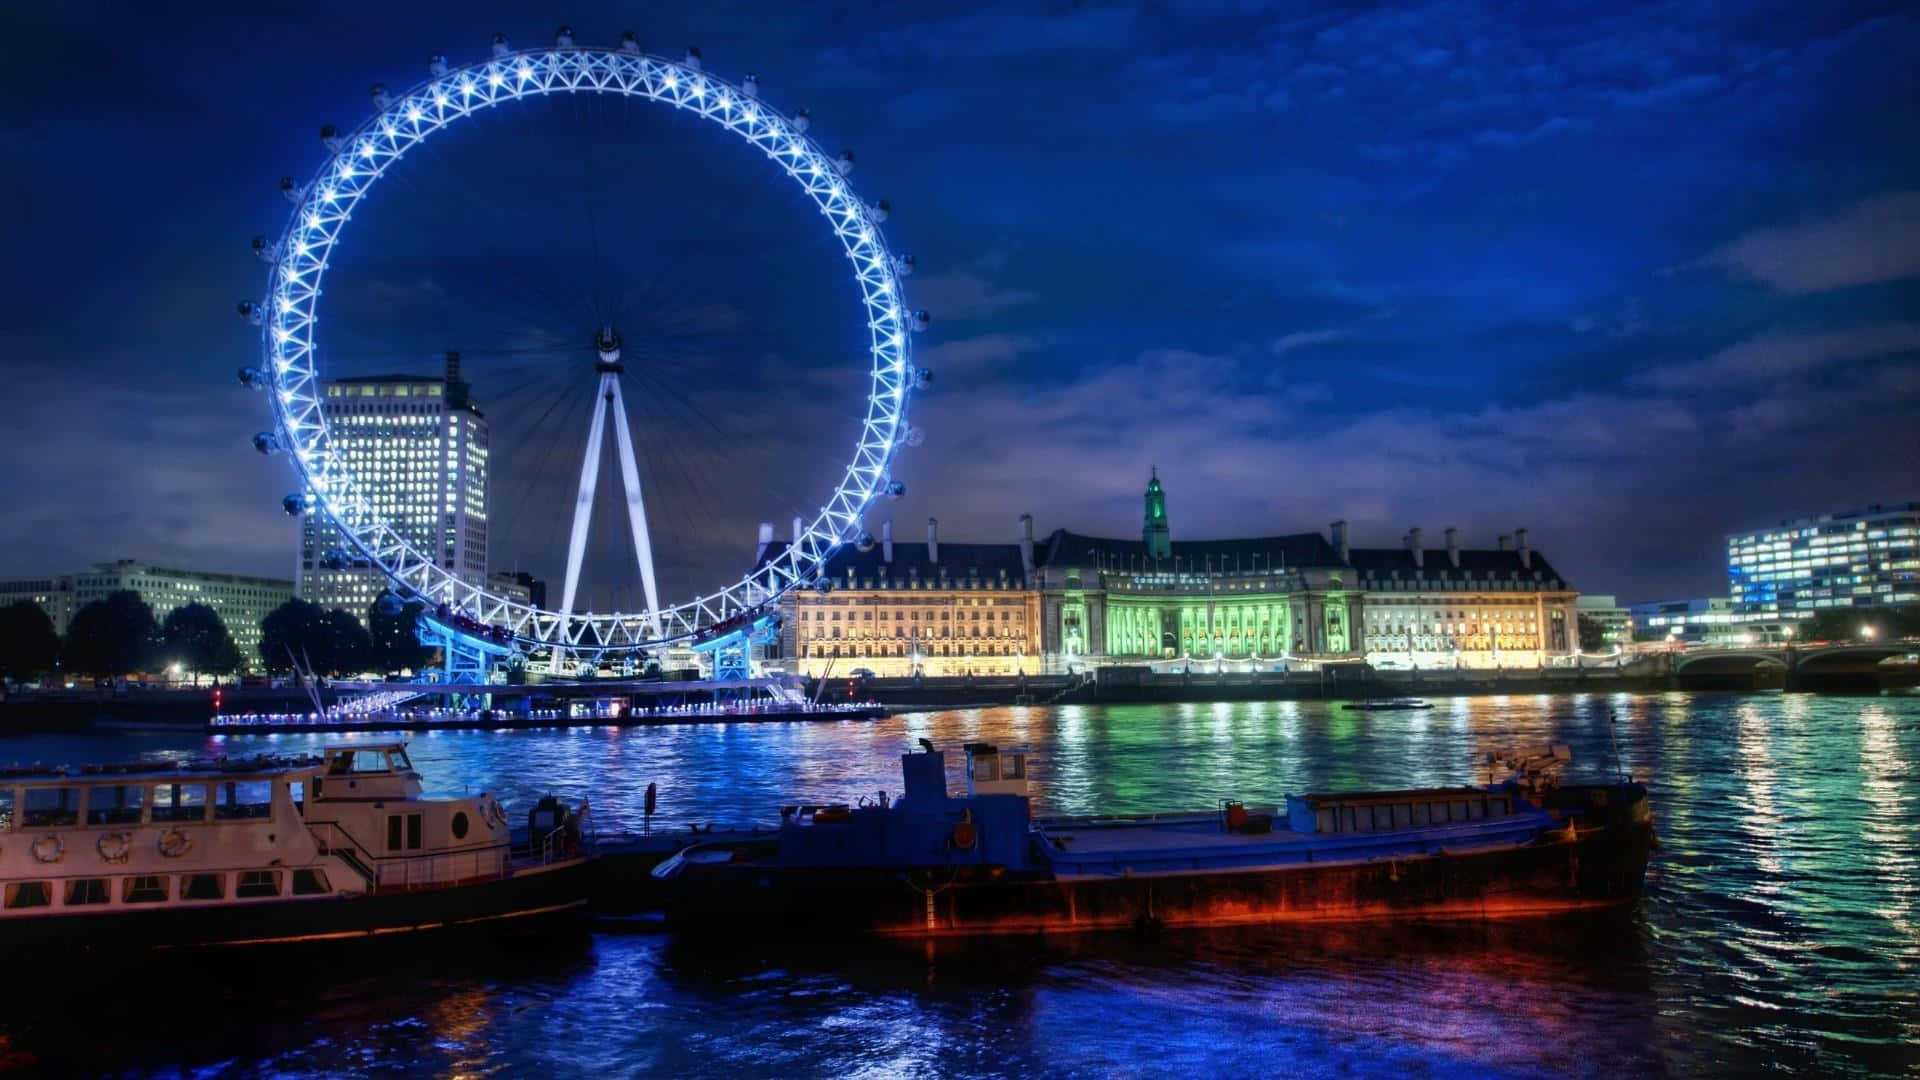 London Eye Wheel In England Wallpaper